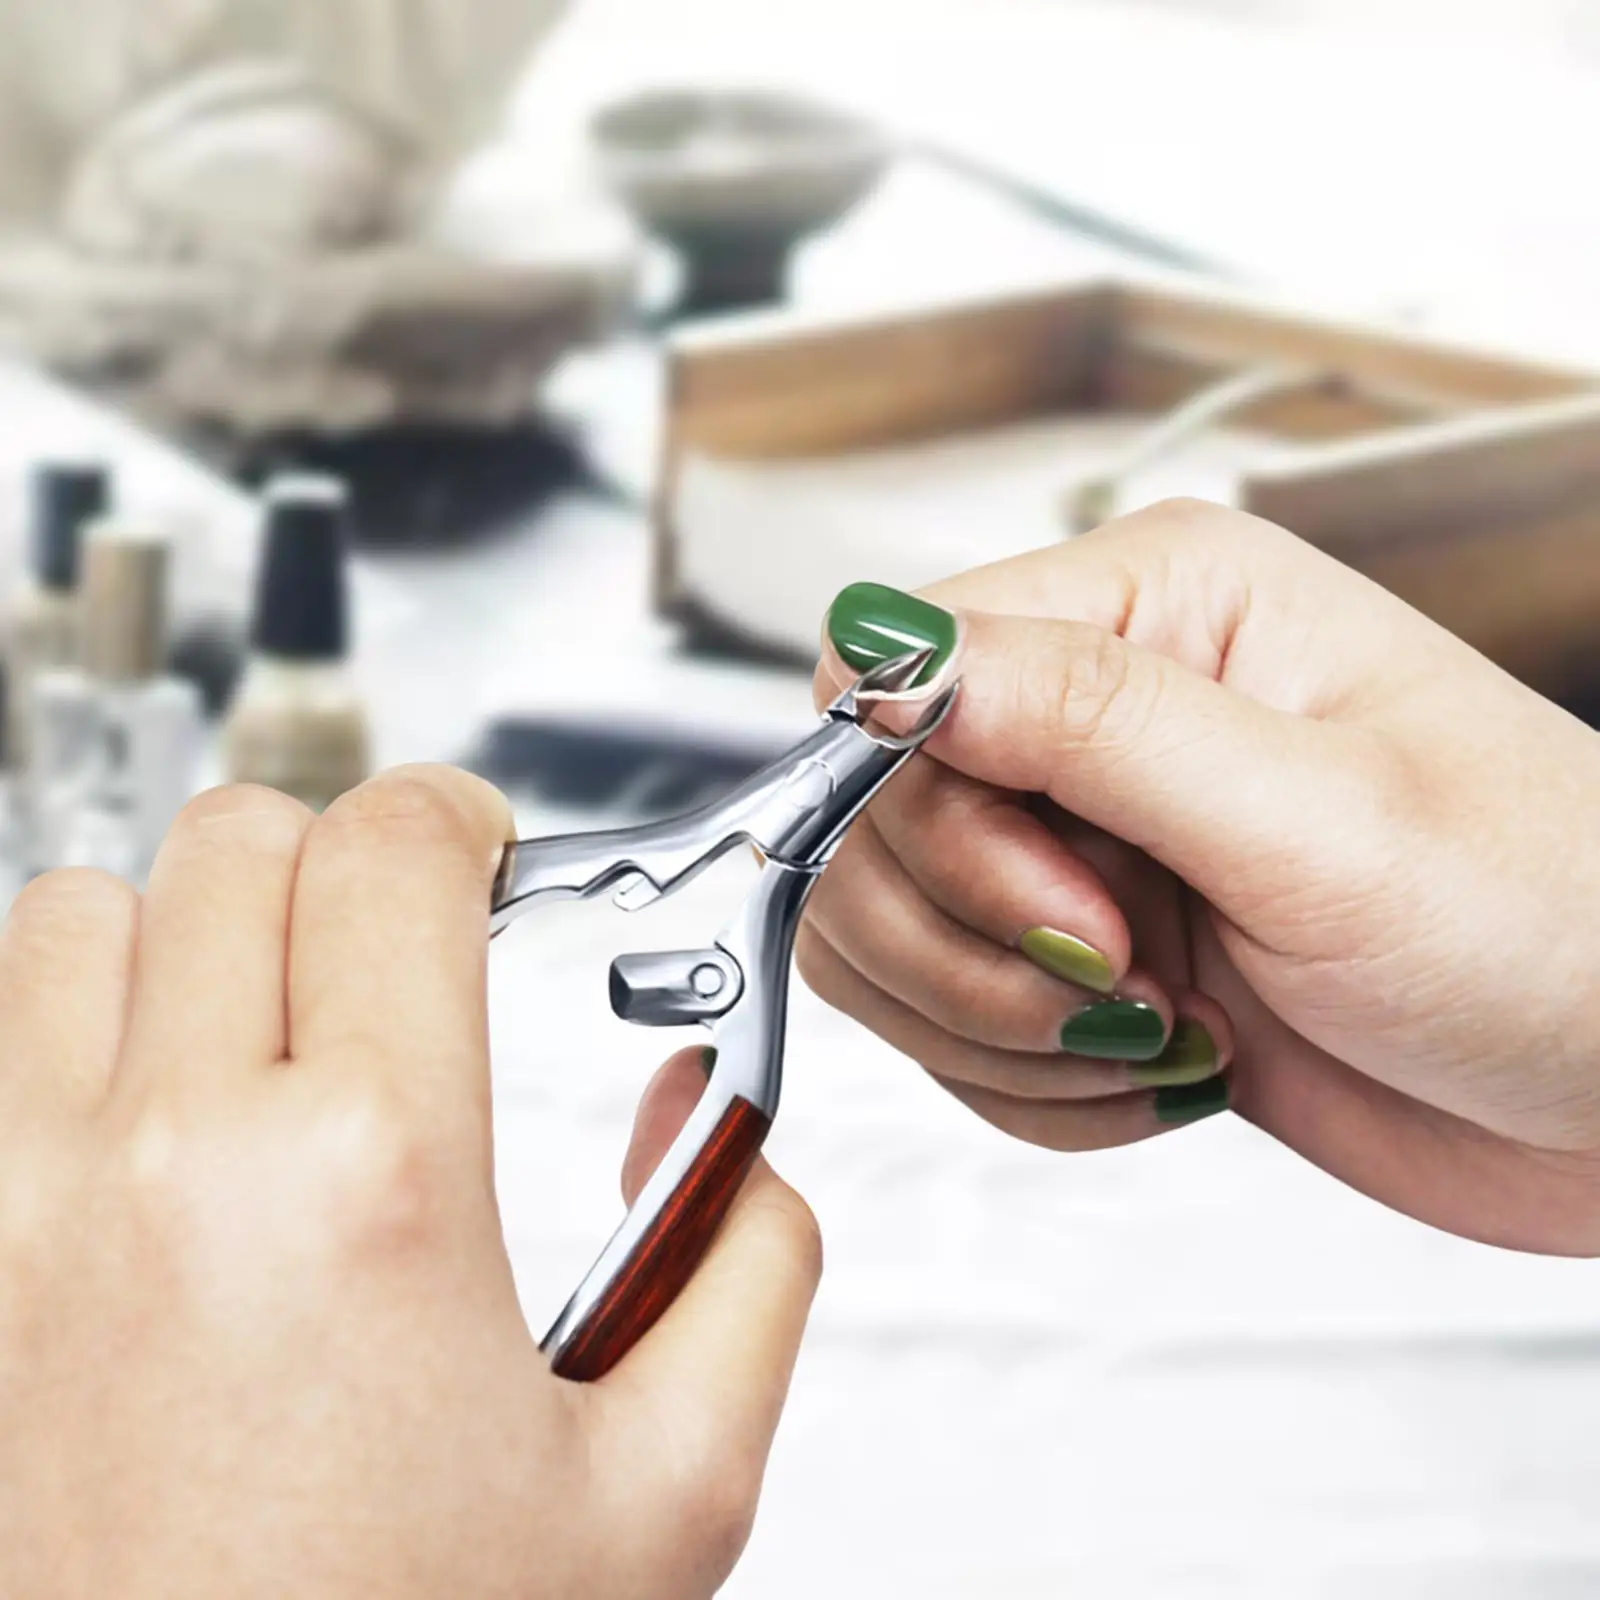 Manicure Nippers Precise Manicure Plier for Fingernails Toenails Salon SPA